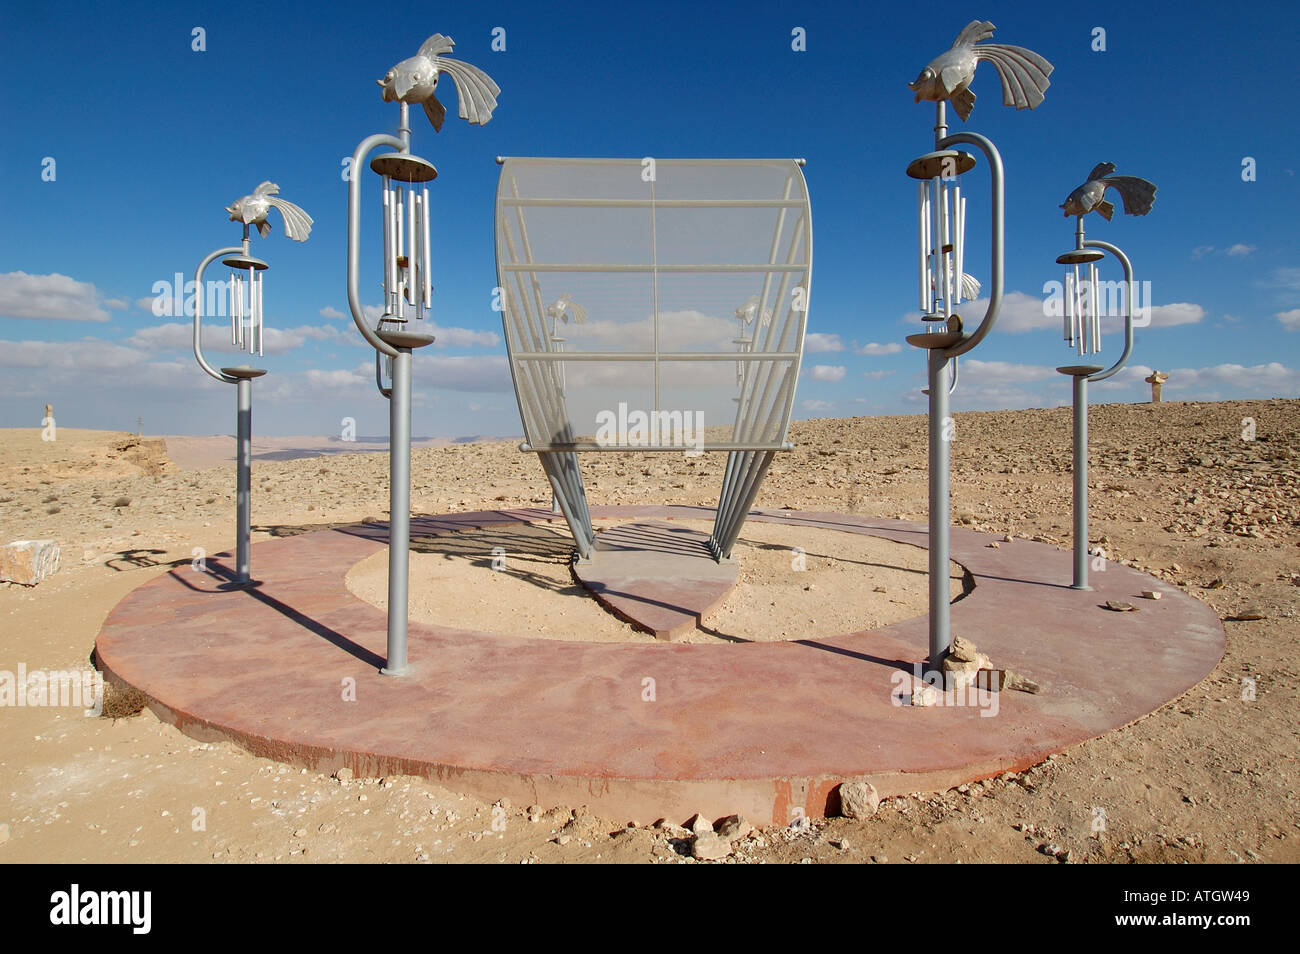 Sculpture sonore 'navire du désert' par sculpteur israélien Nitzan Refaeli au Desert Sculpture Park à Mitzpe Ramon désert du Neguev dans le sud d'Israël Banque D'Images